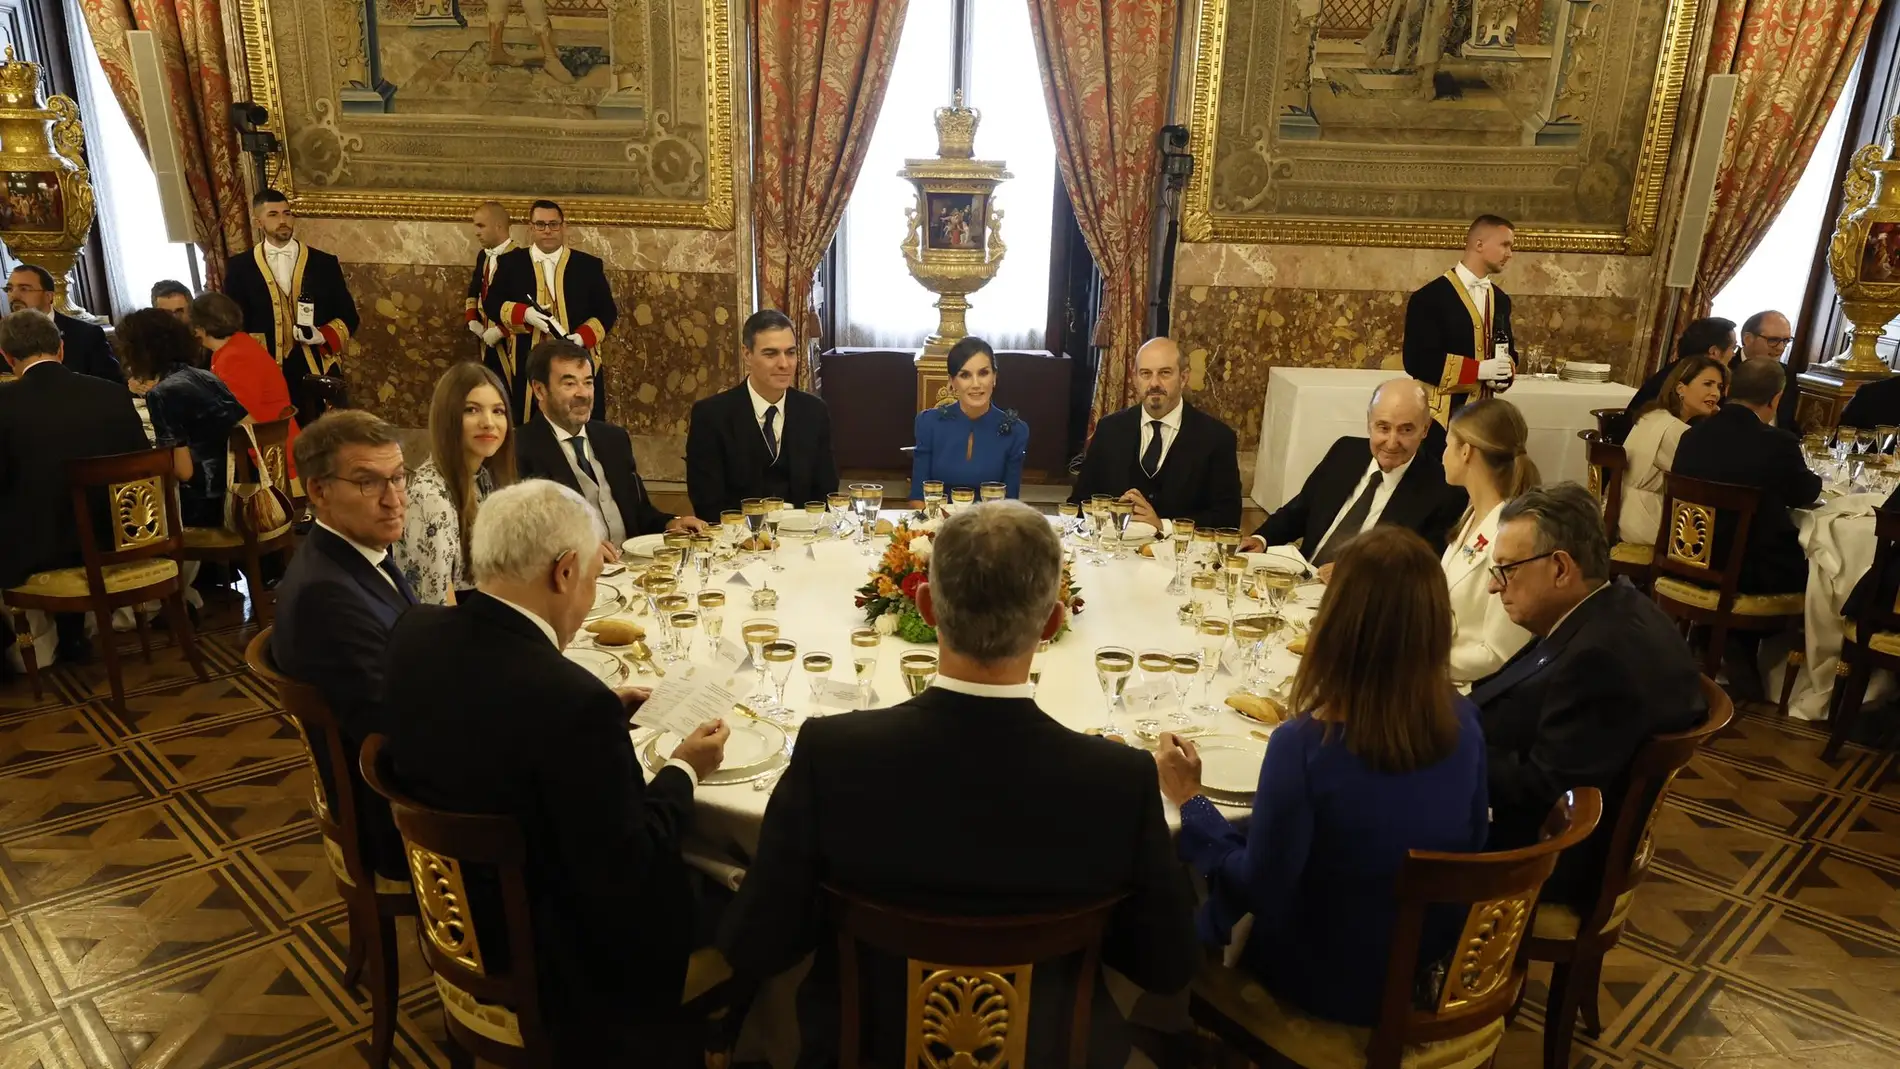 Mesa del banquete en el Palacio Real tras la jura de la princesa Leonor.